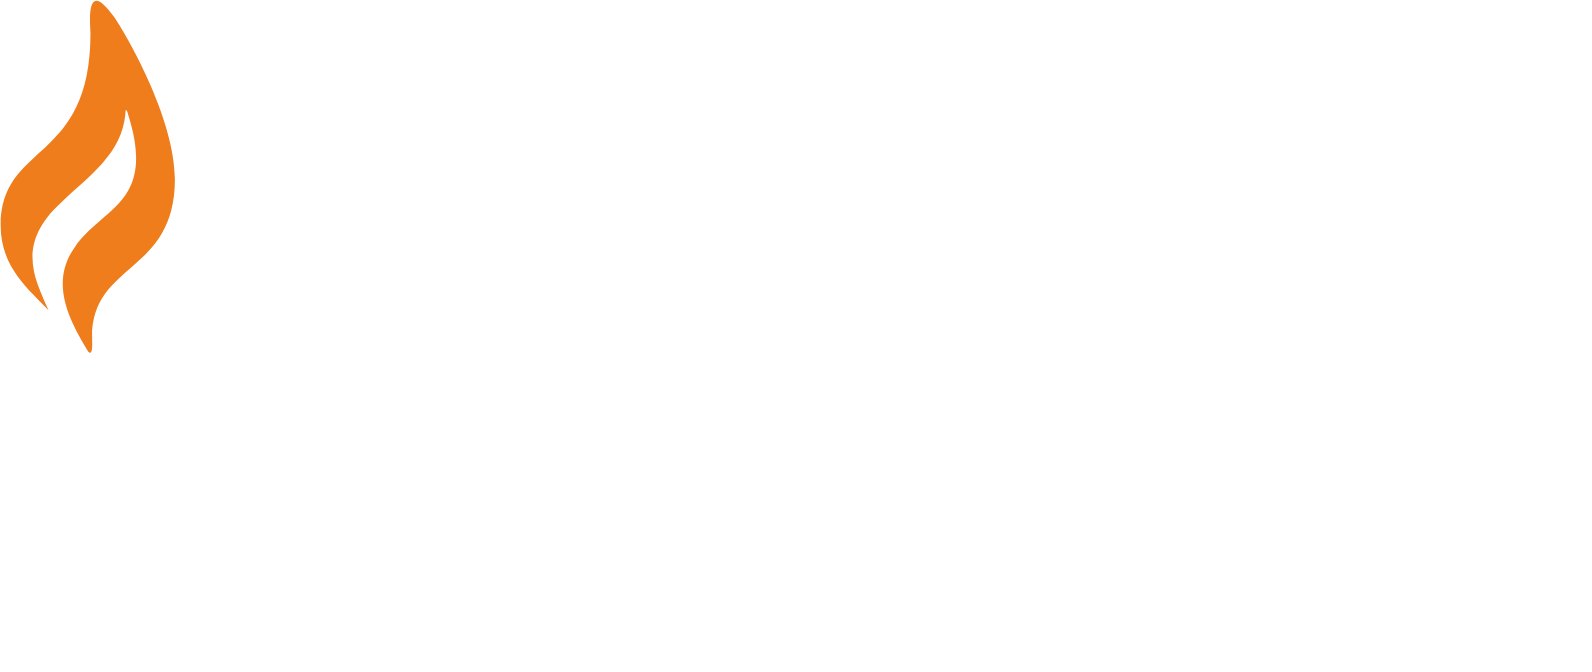 Ringkjøbing Landbobank logo grand pour les fonds sombres (PNG transparent)